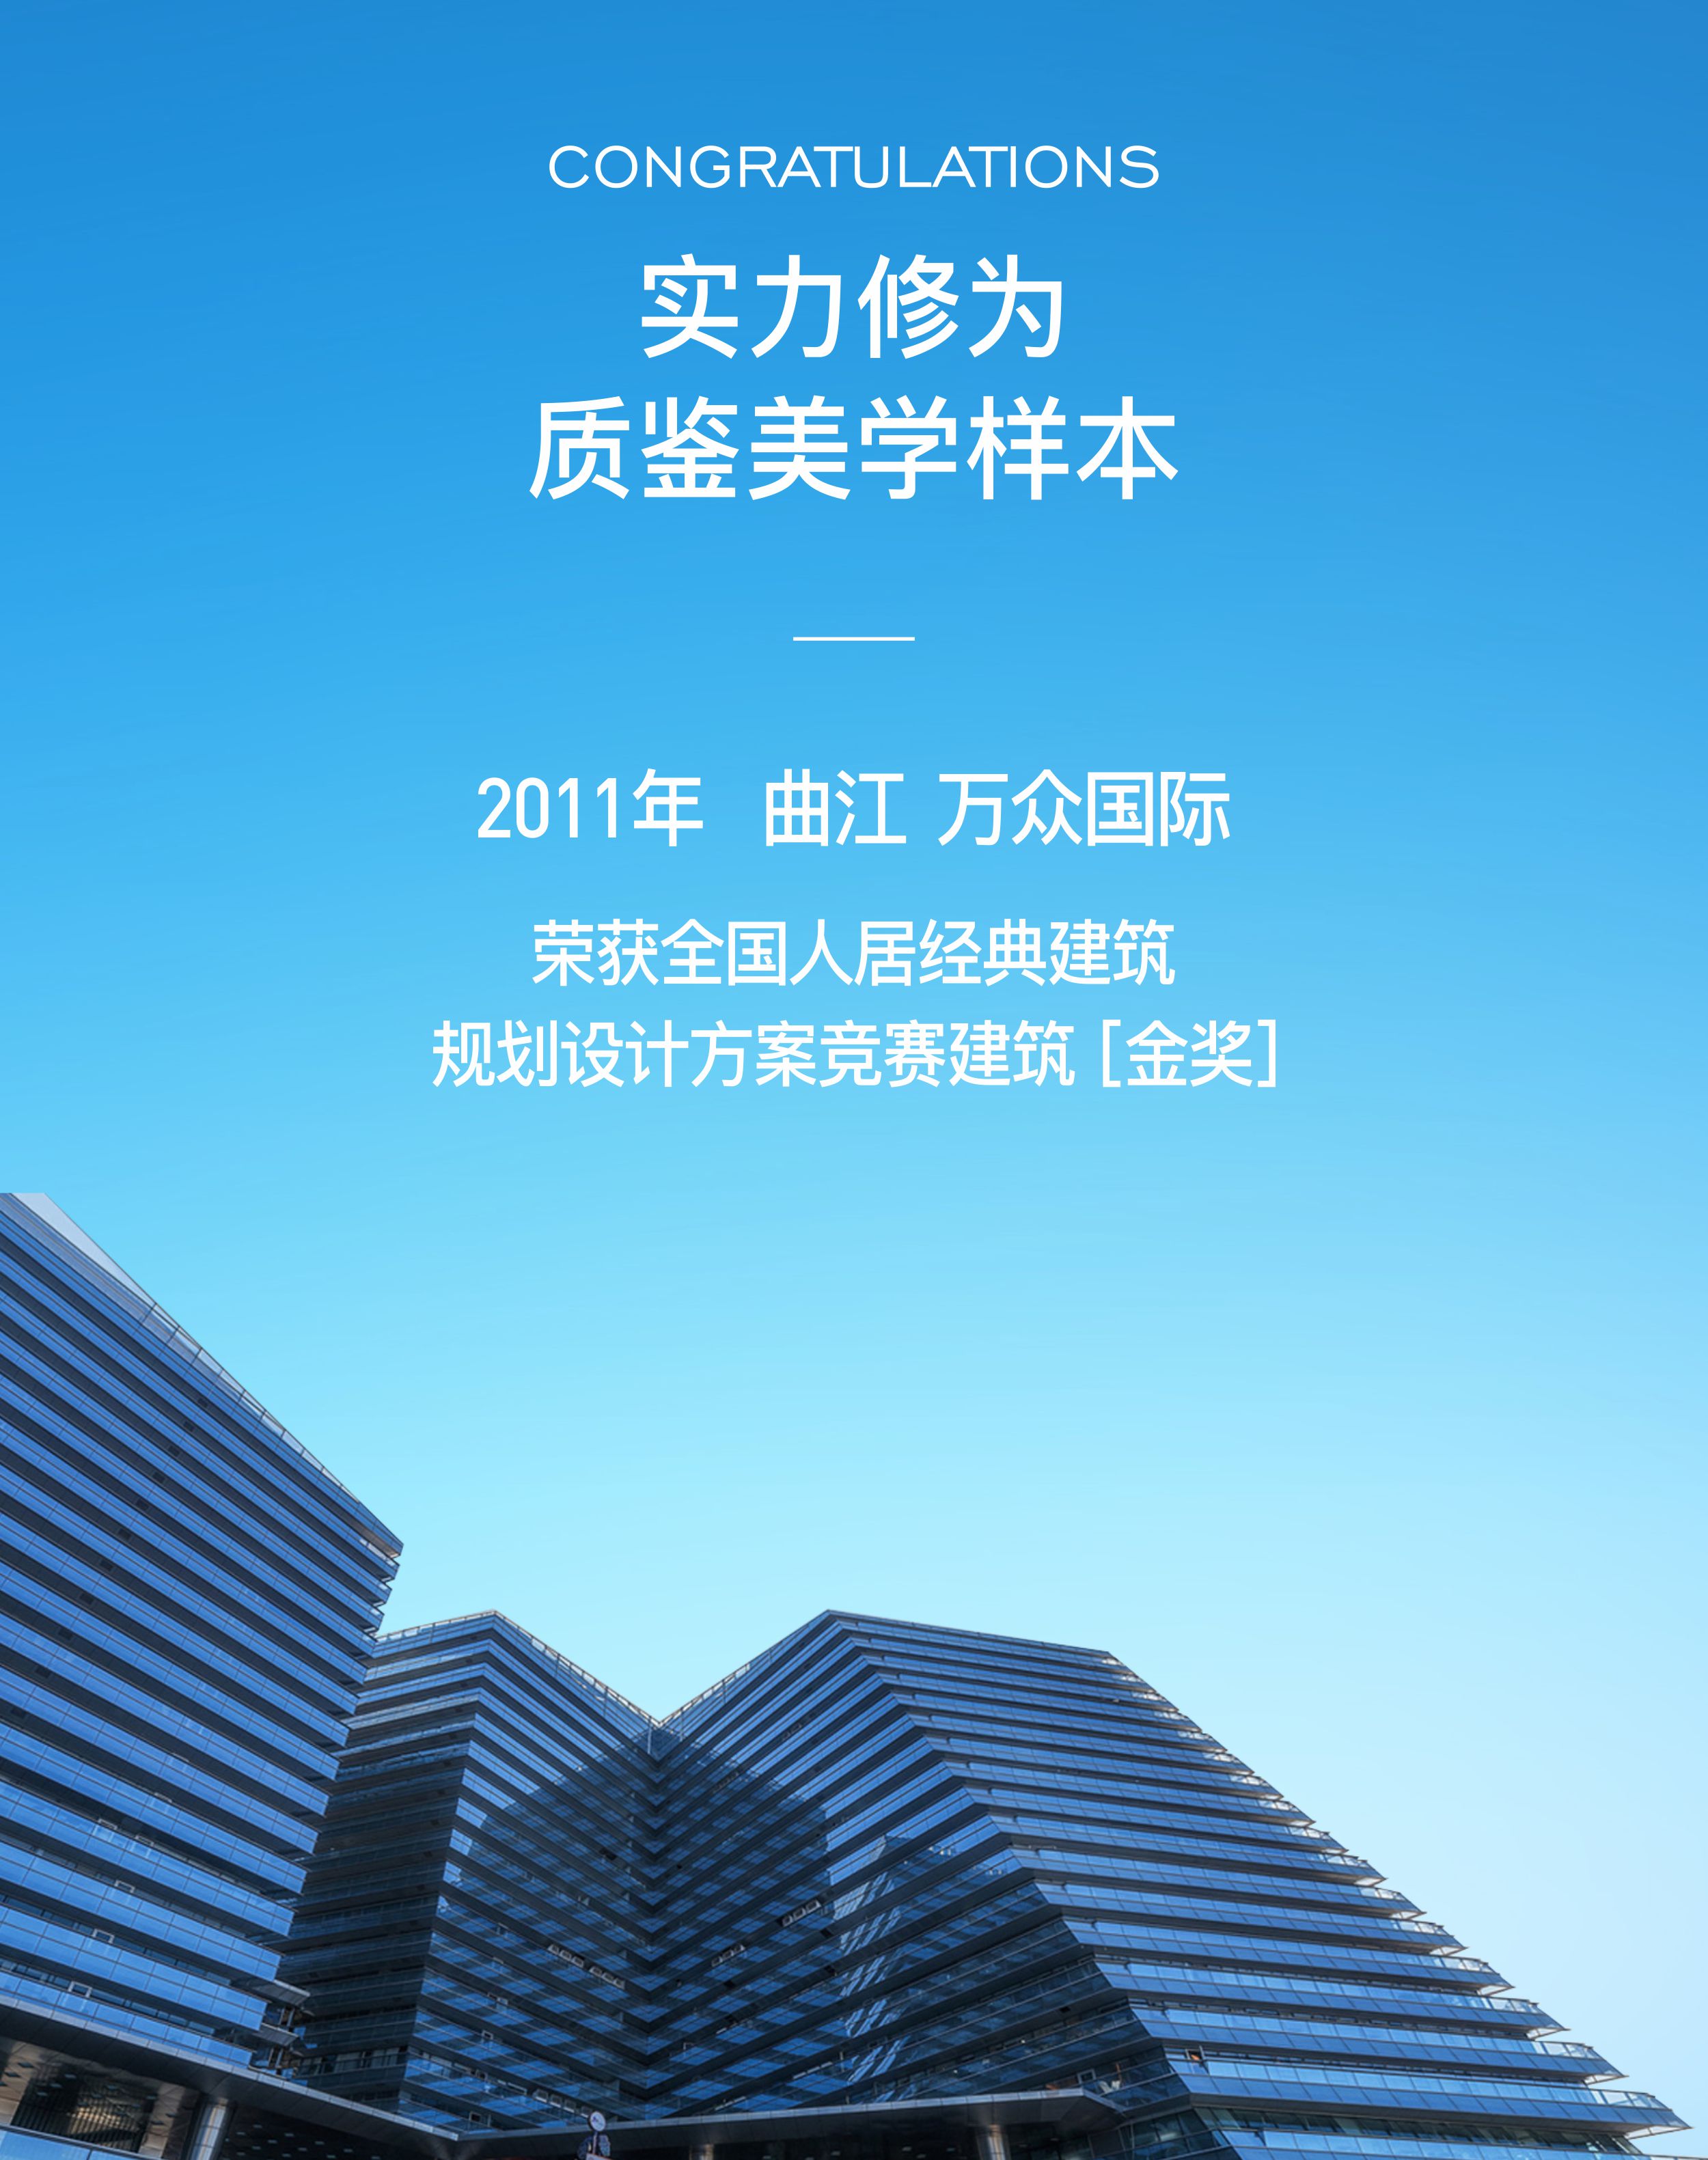 2011年 曲江 · 万众国际荣获全国人居经典建筑规划设计方案竞赛建筑 [ 金奖 ]